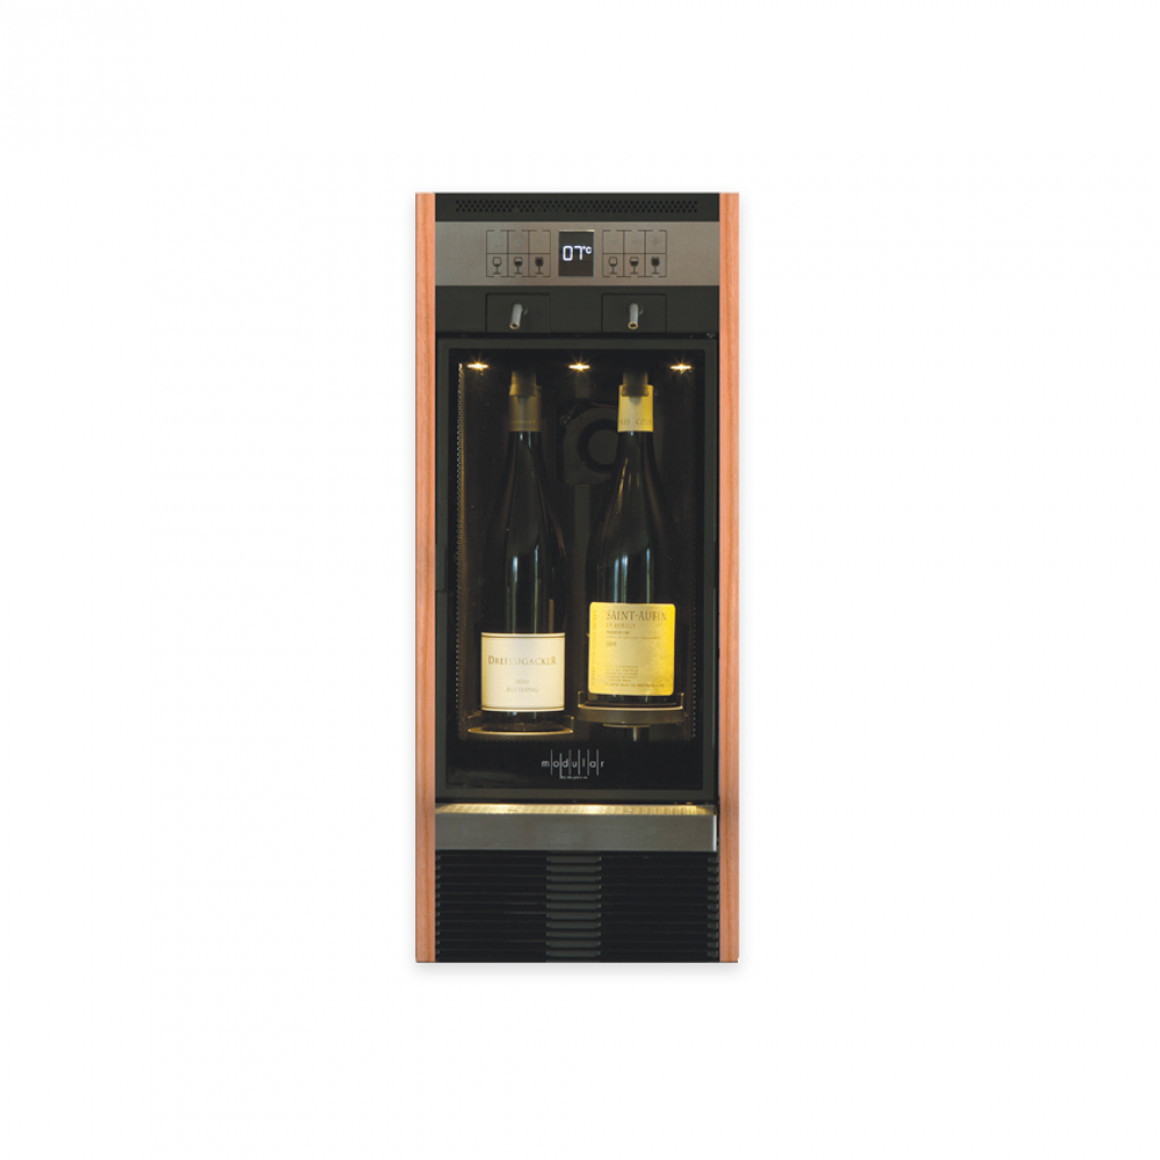 Modular wine dispenser for 2 bottles